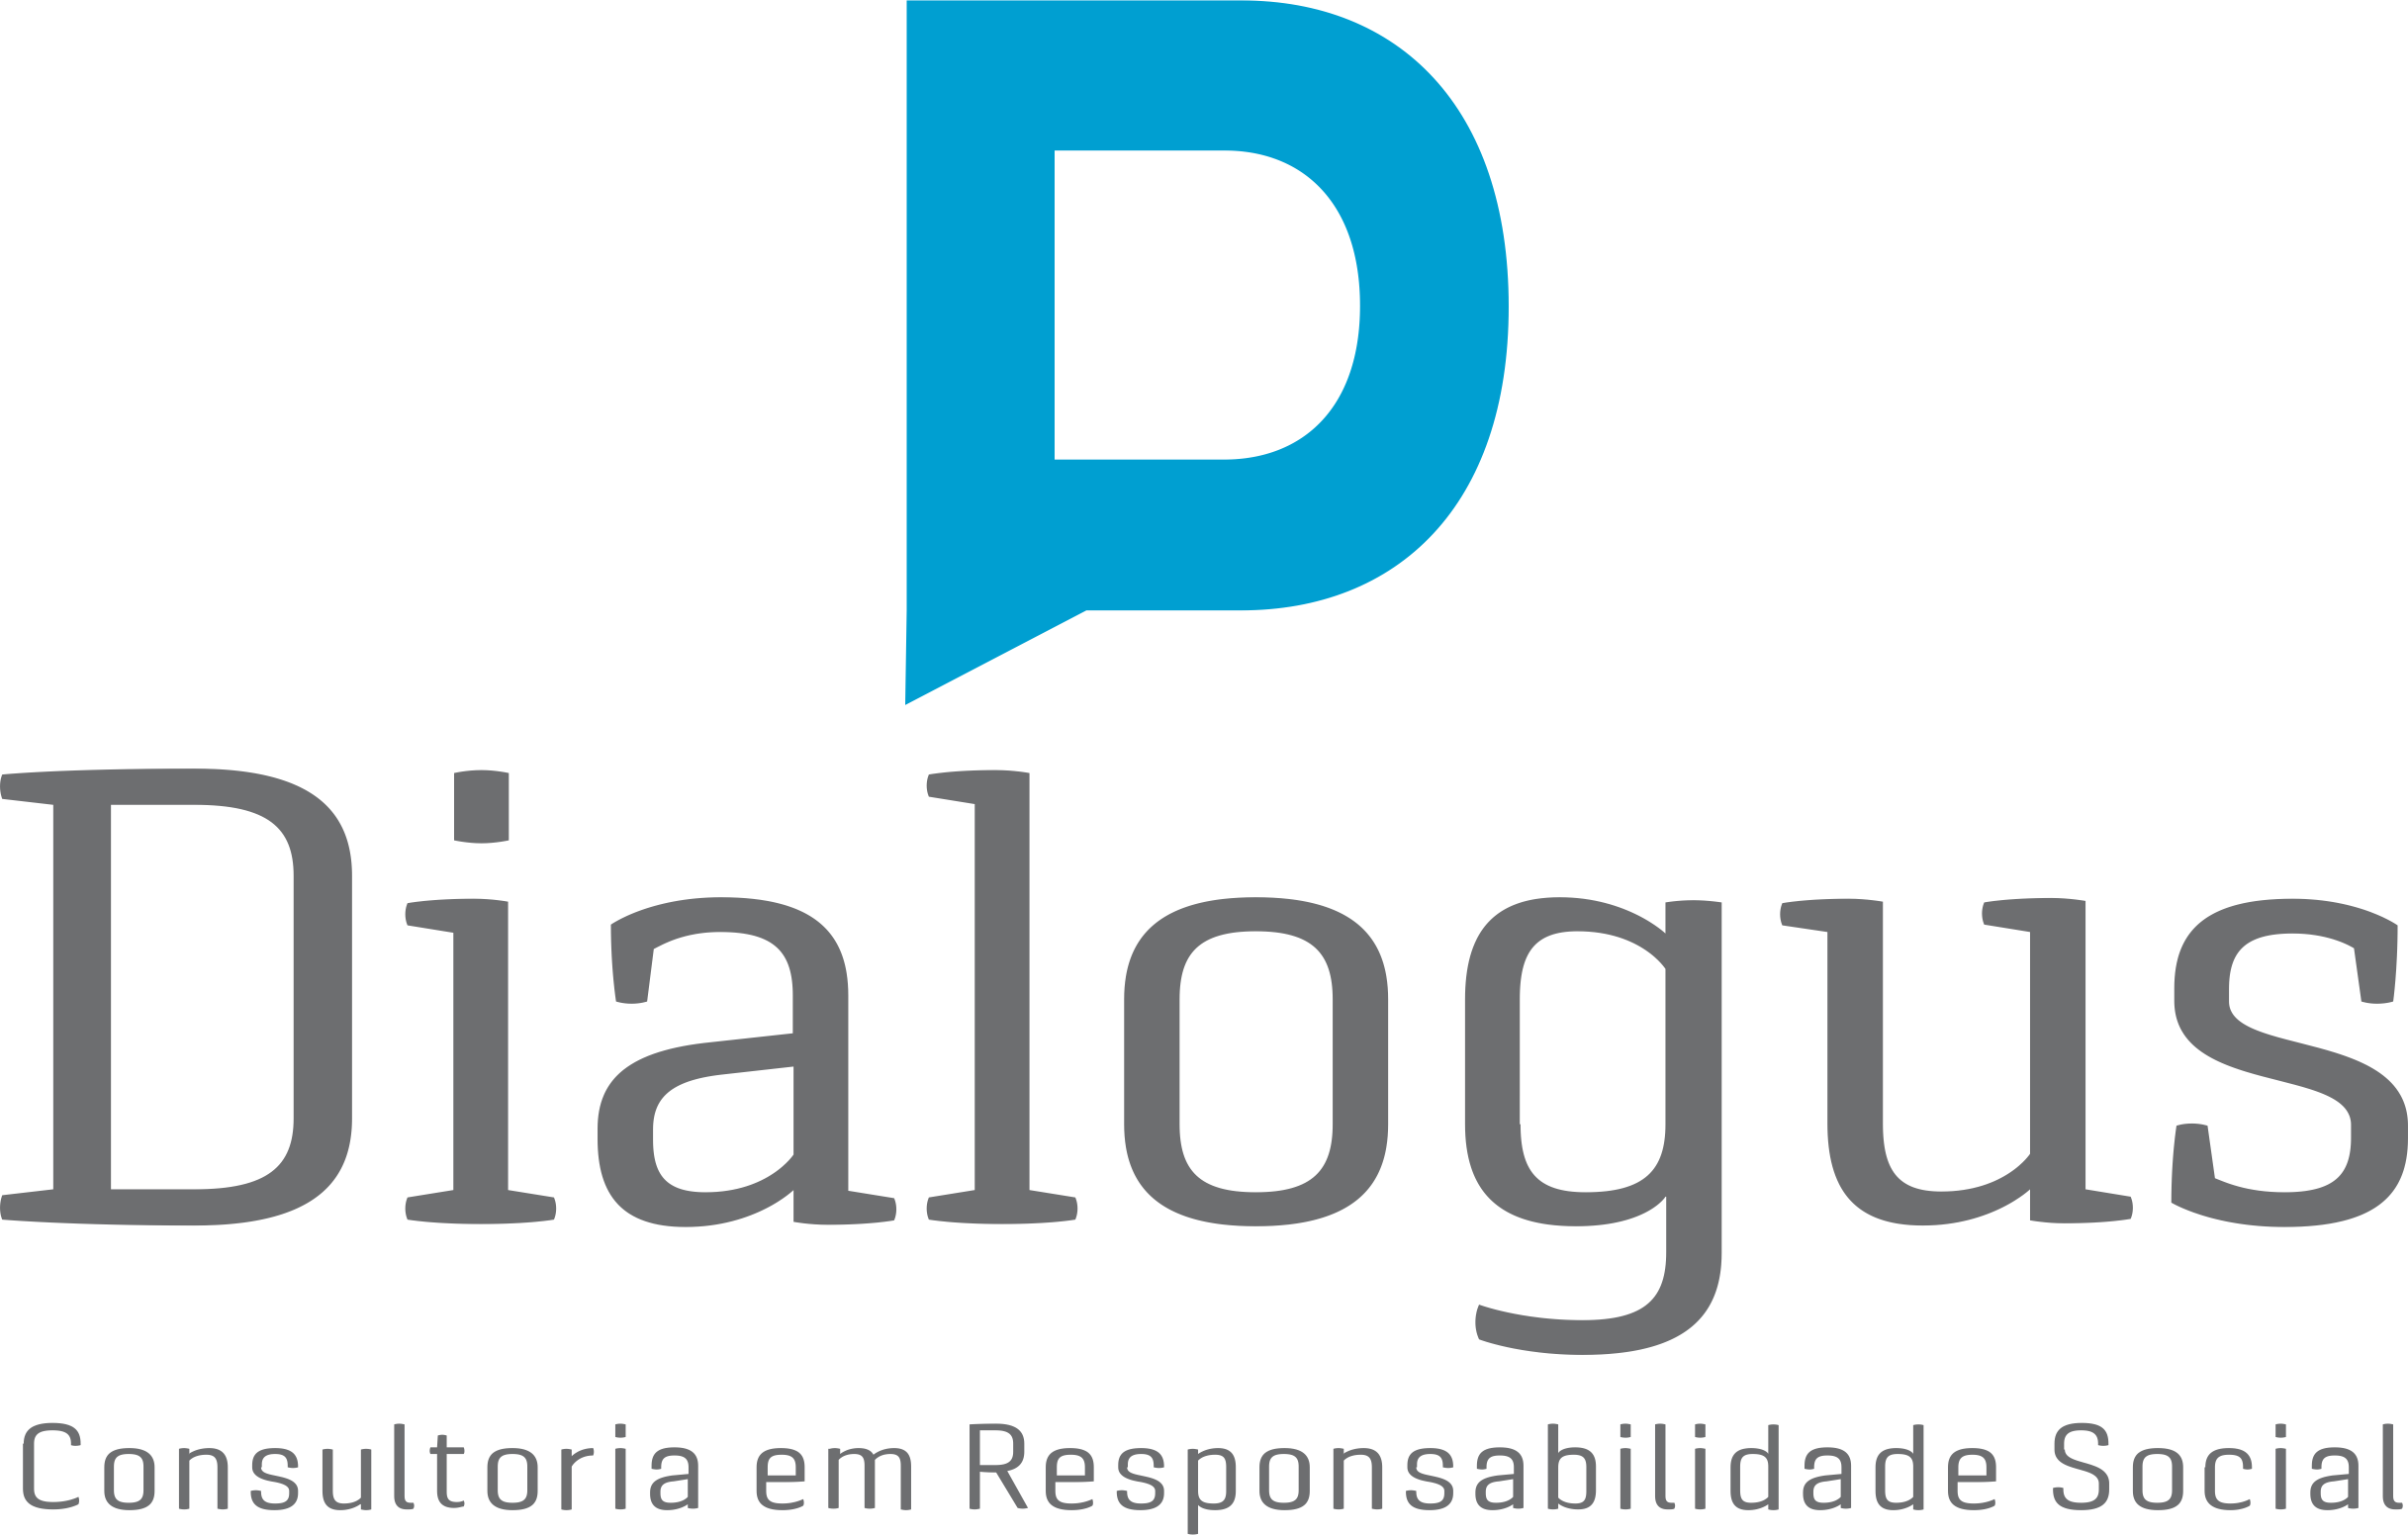 Dialogus Responsabilidade Social - Consultoria - Política de Responsabilidade Social - Fortaleza/CE